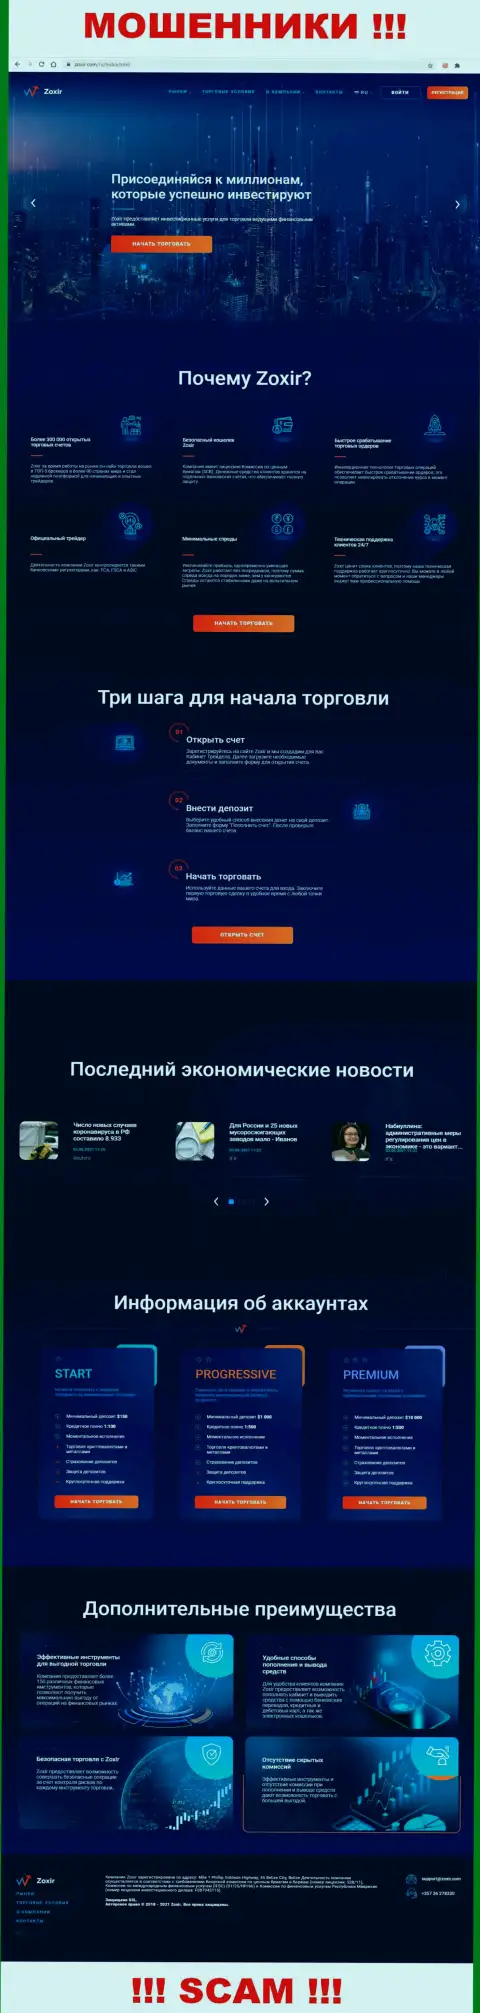 Web-сервис мошеннической организации Зохир - Зохир Ком